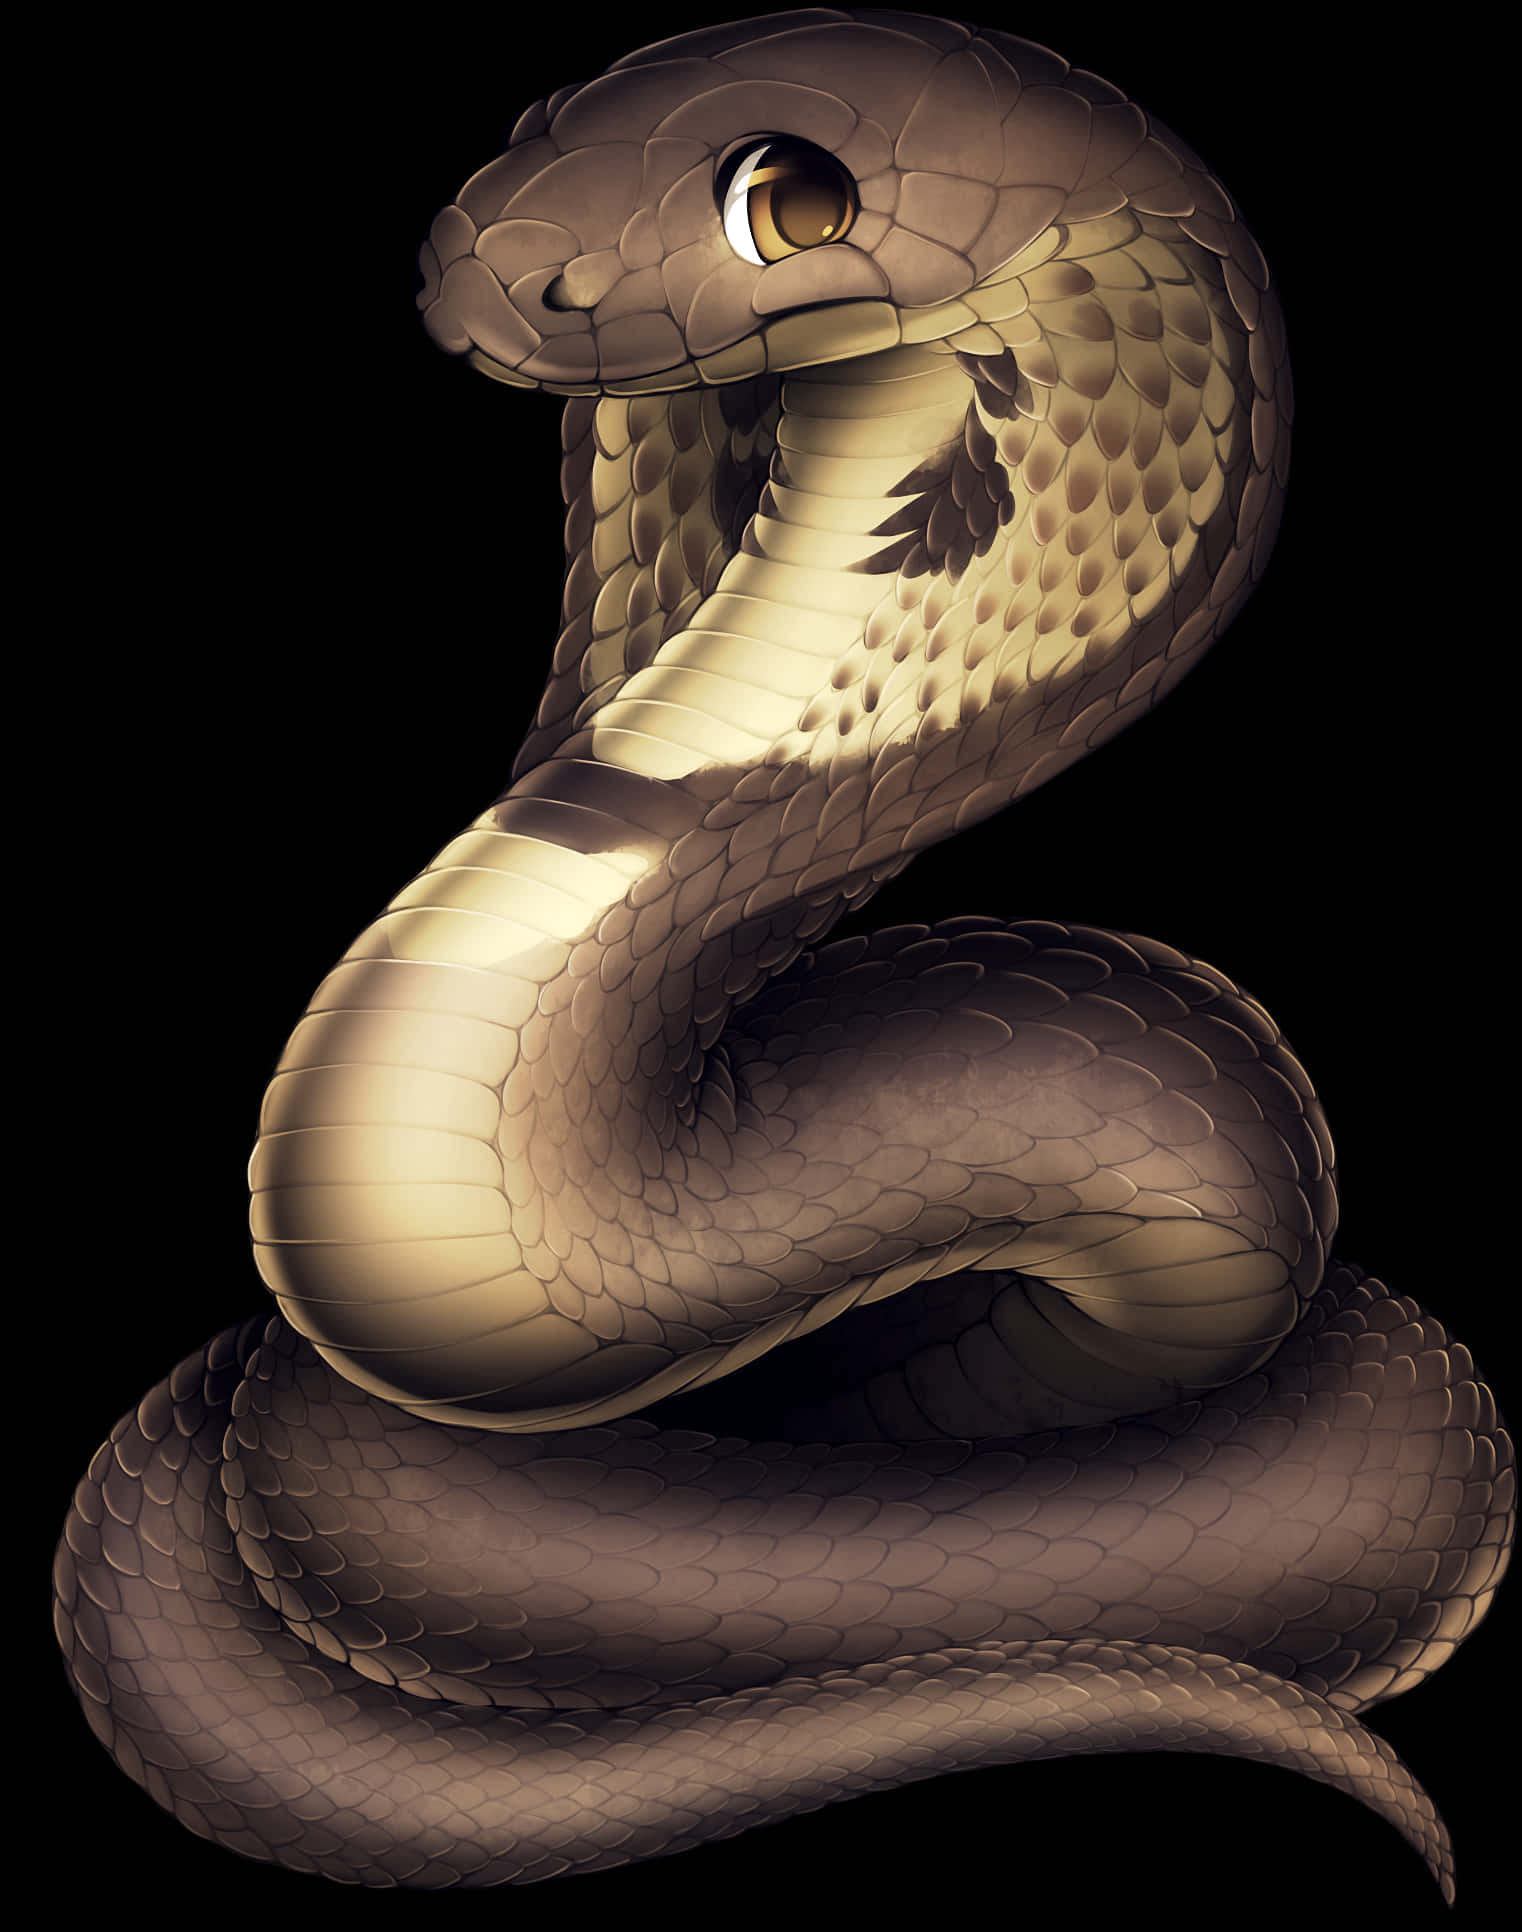 Coiled Snake Illustration